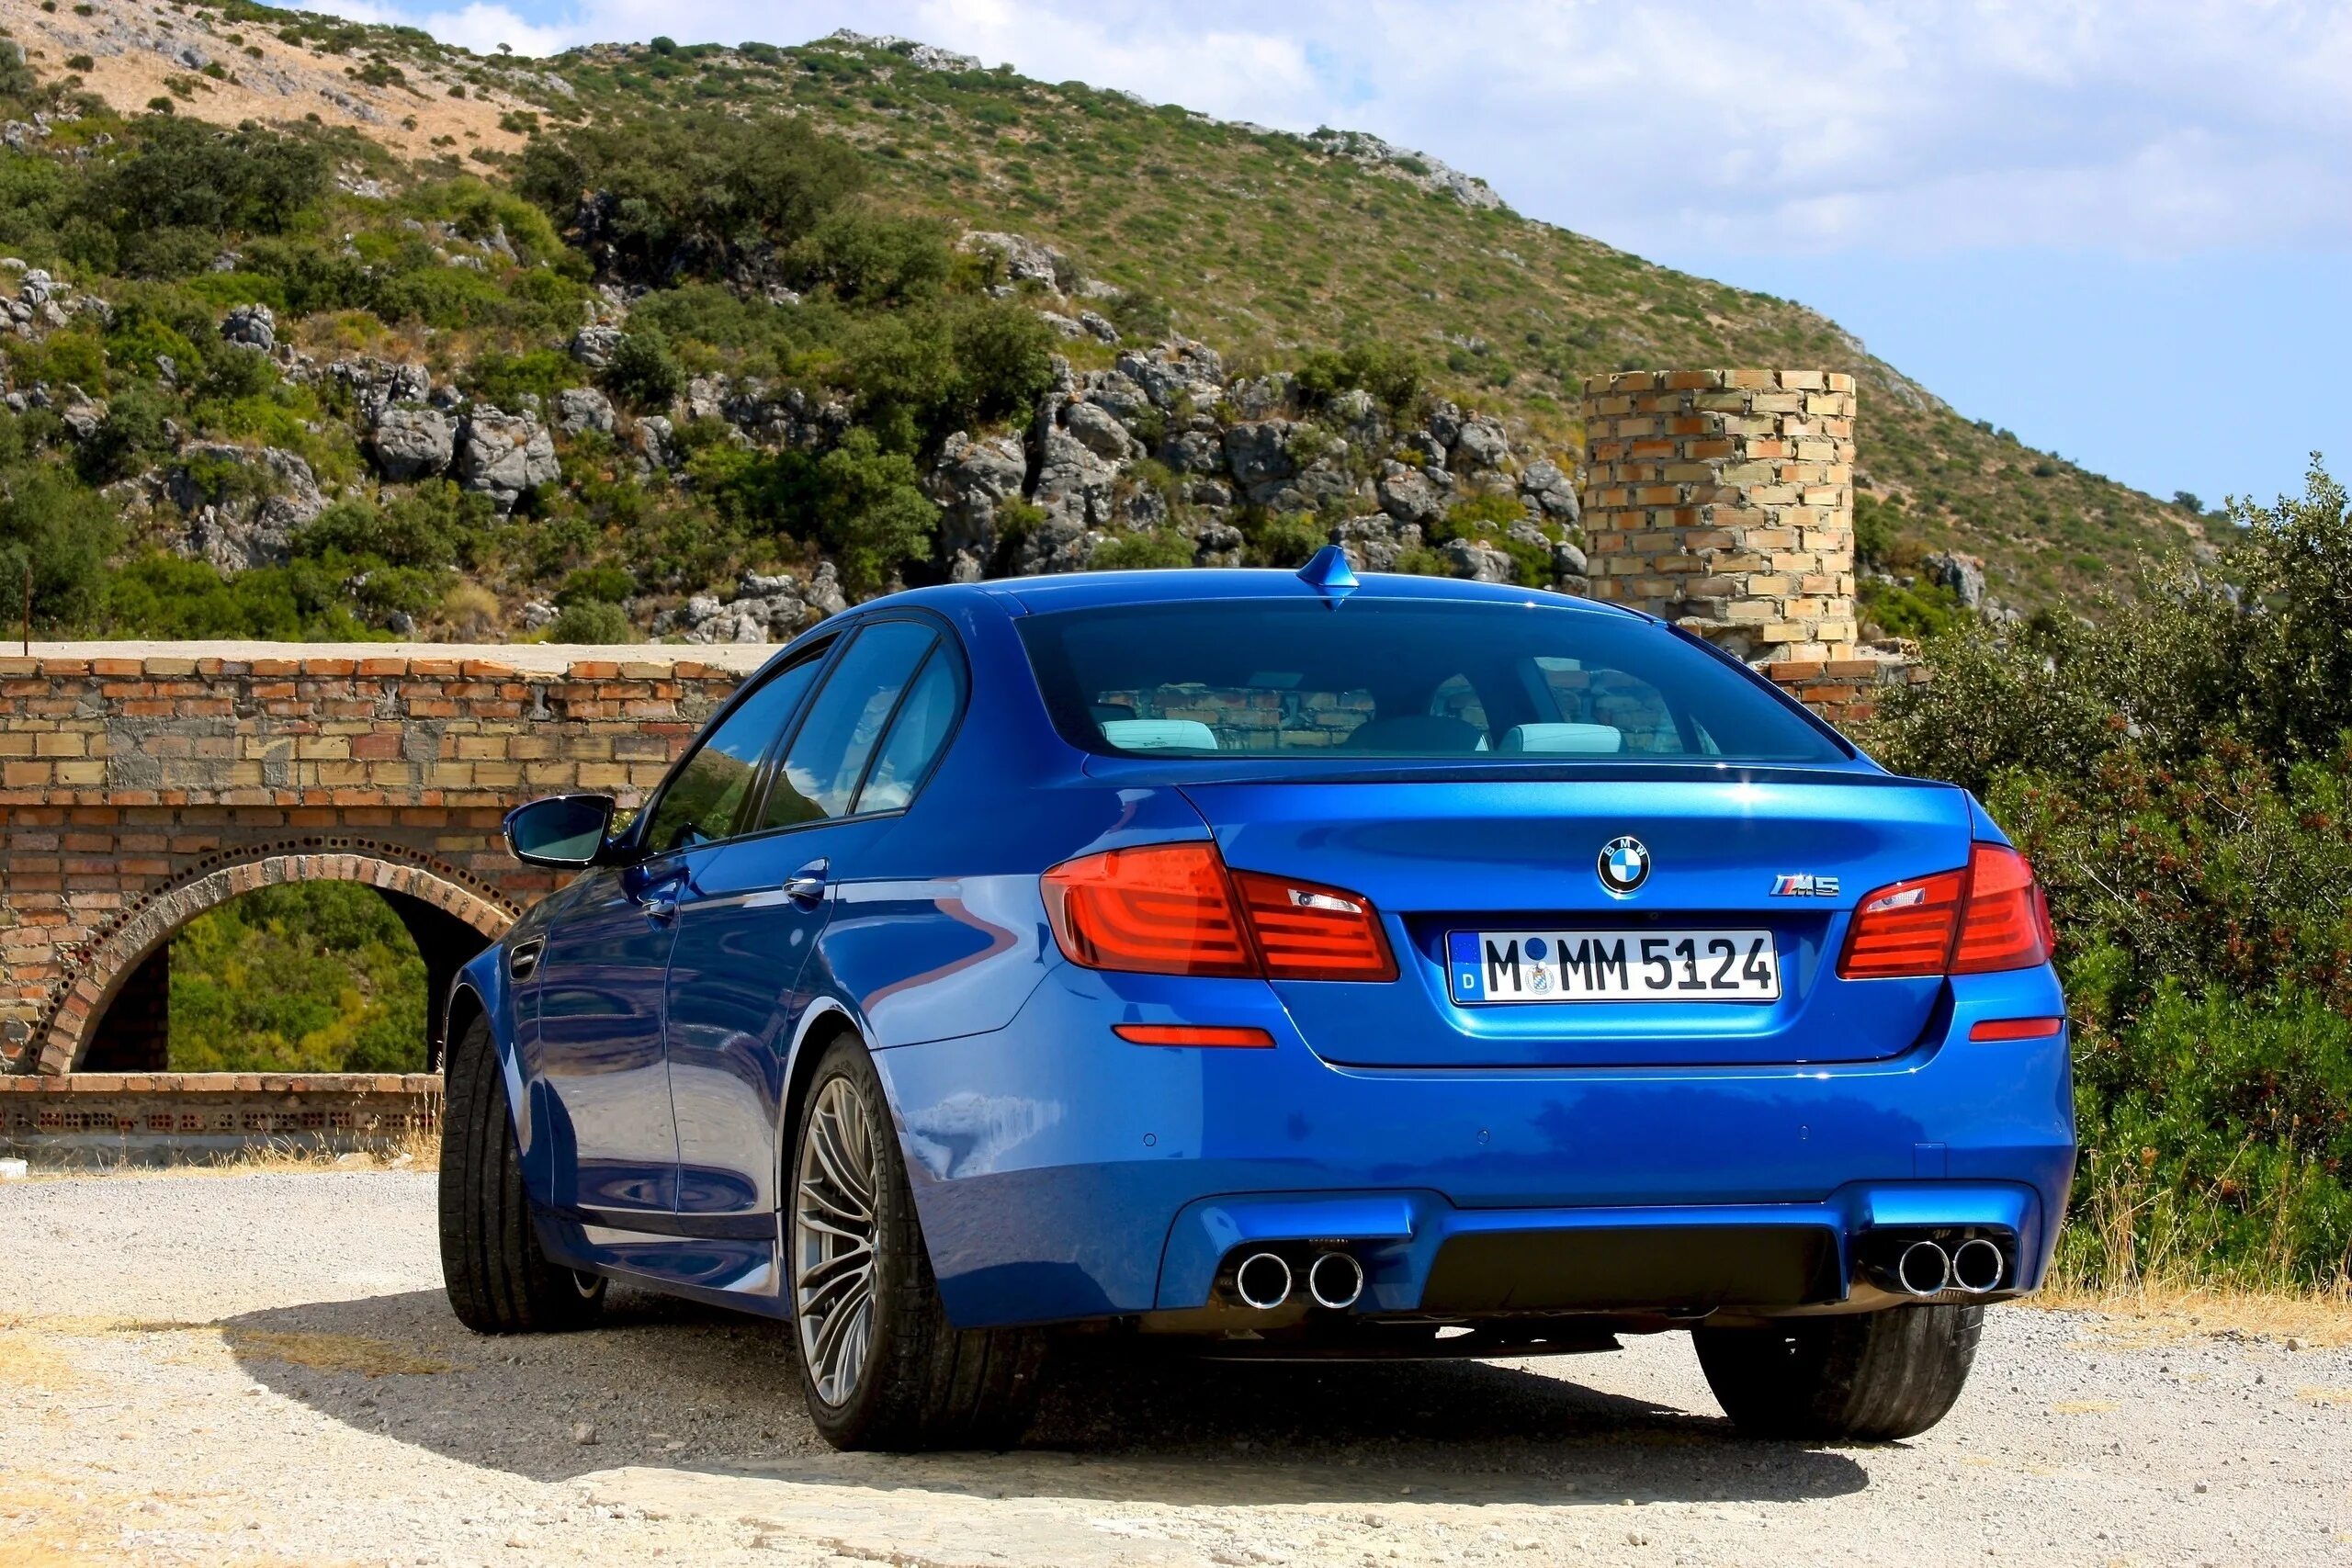 Better f 5. BMW m5 f10. BMW m5 f90. BMW m5 f10 2012. BMW m5 f10 m5.